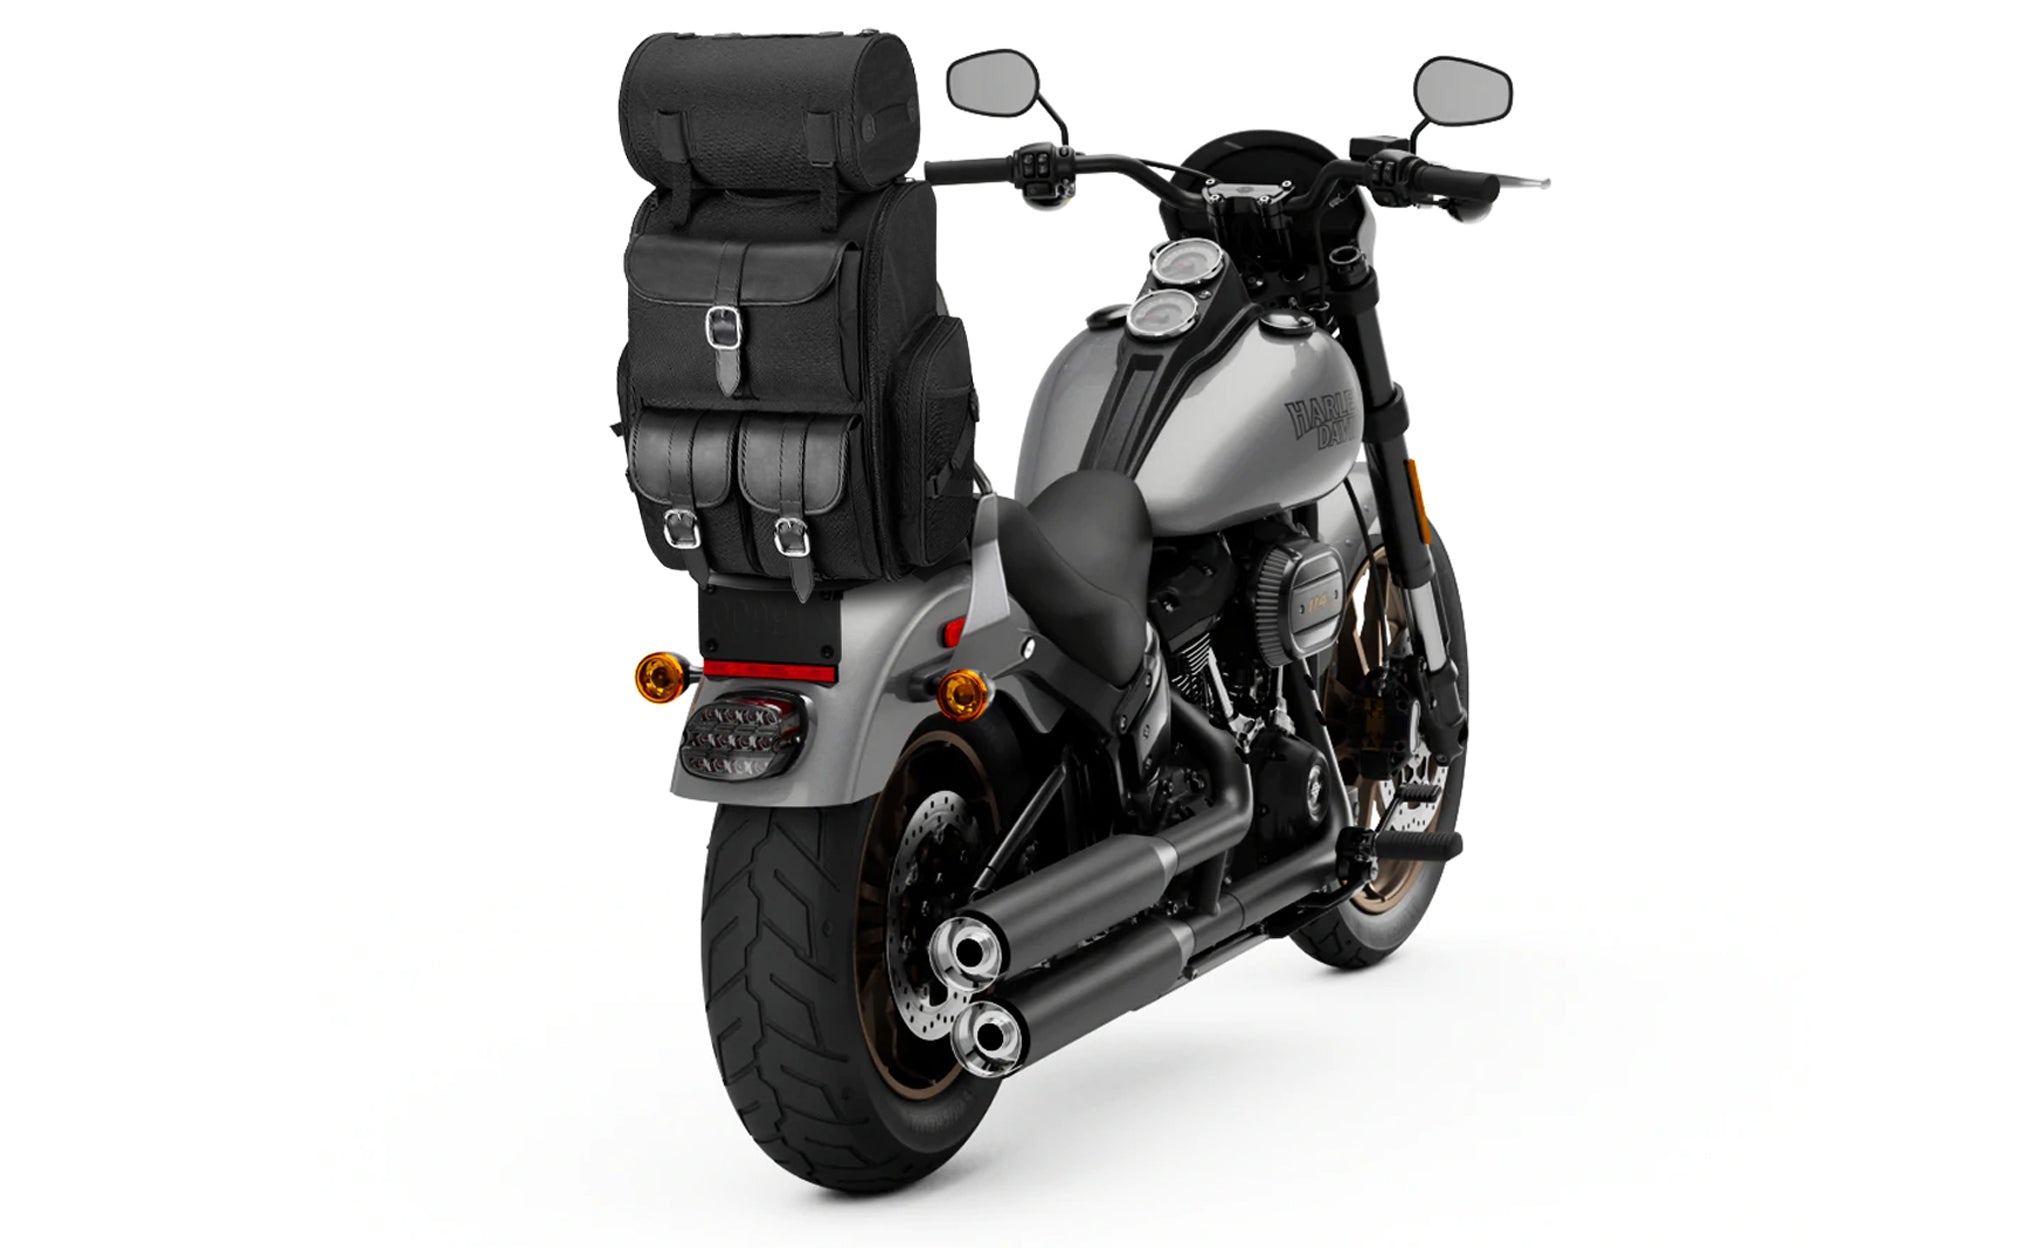 Viking Highway Extra Large Plain Suzuki Motorcycle Sissy Bar Bag Bag on Bike View @expand